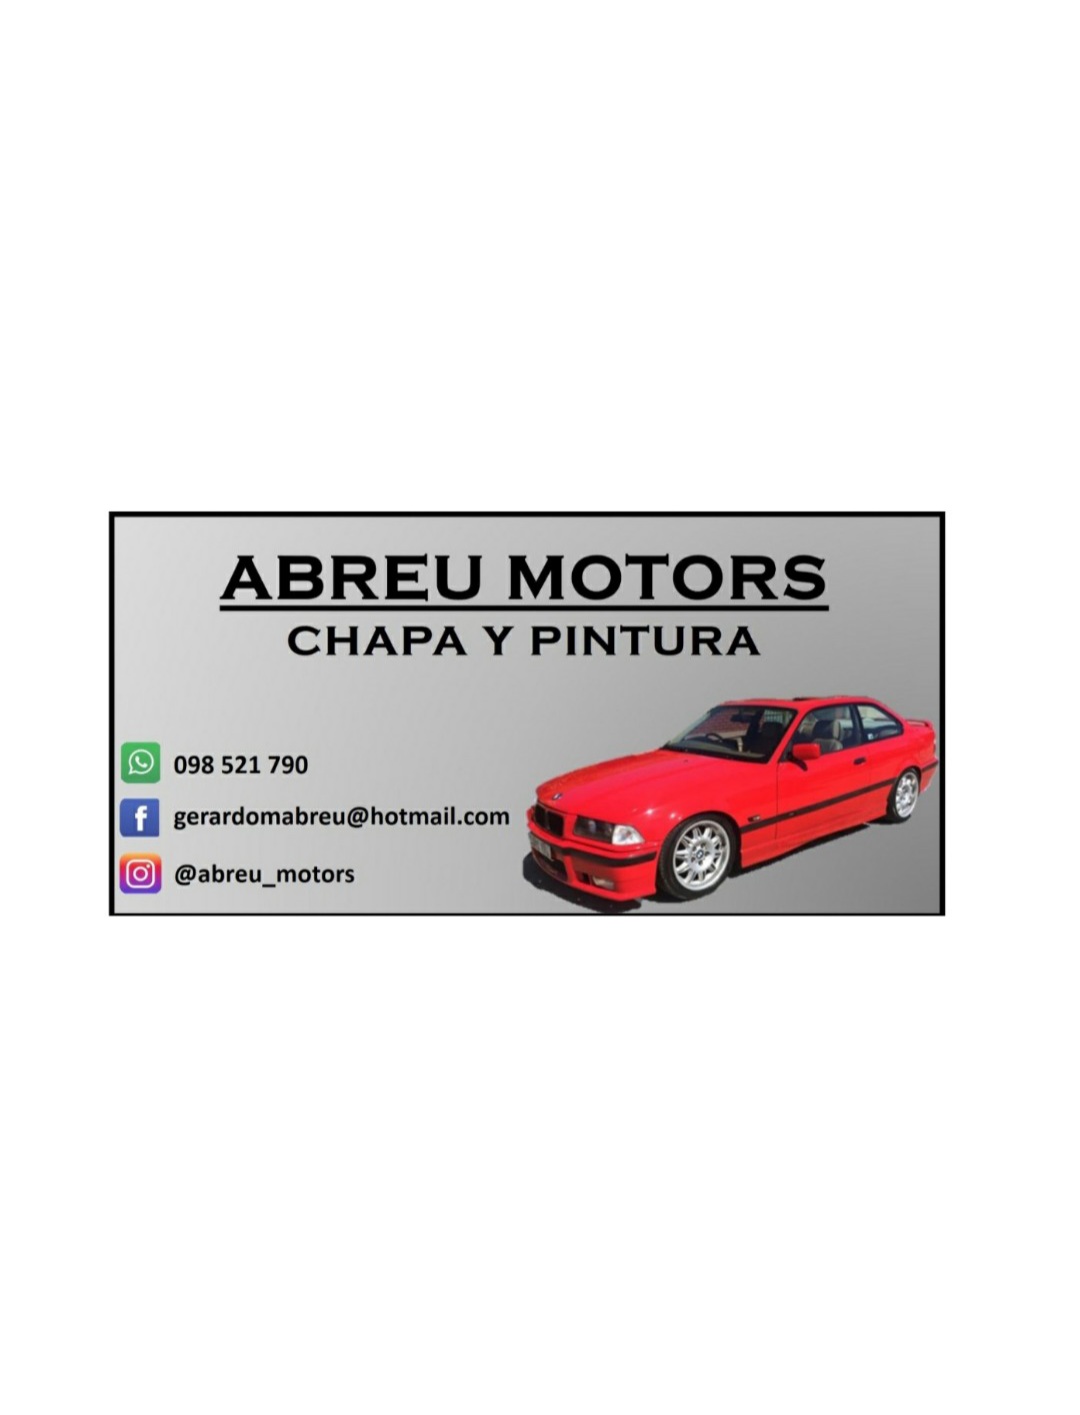 Abreu Motors